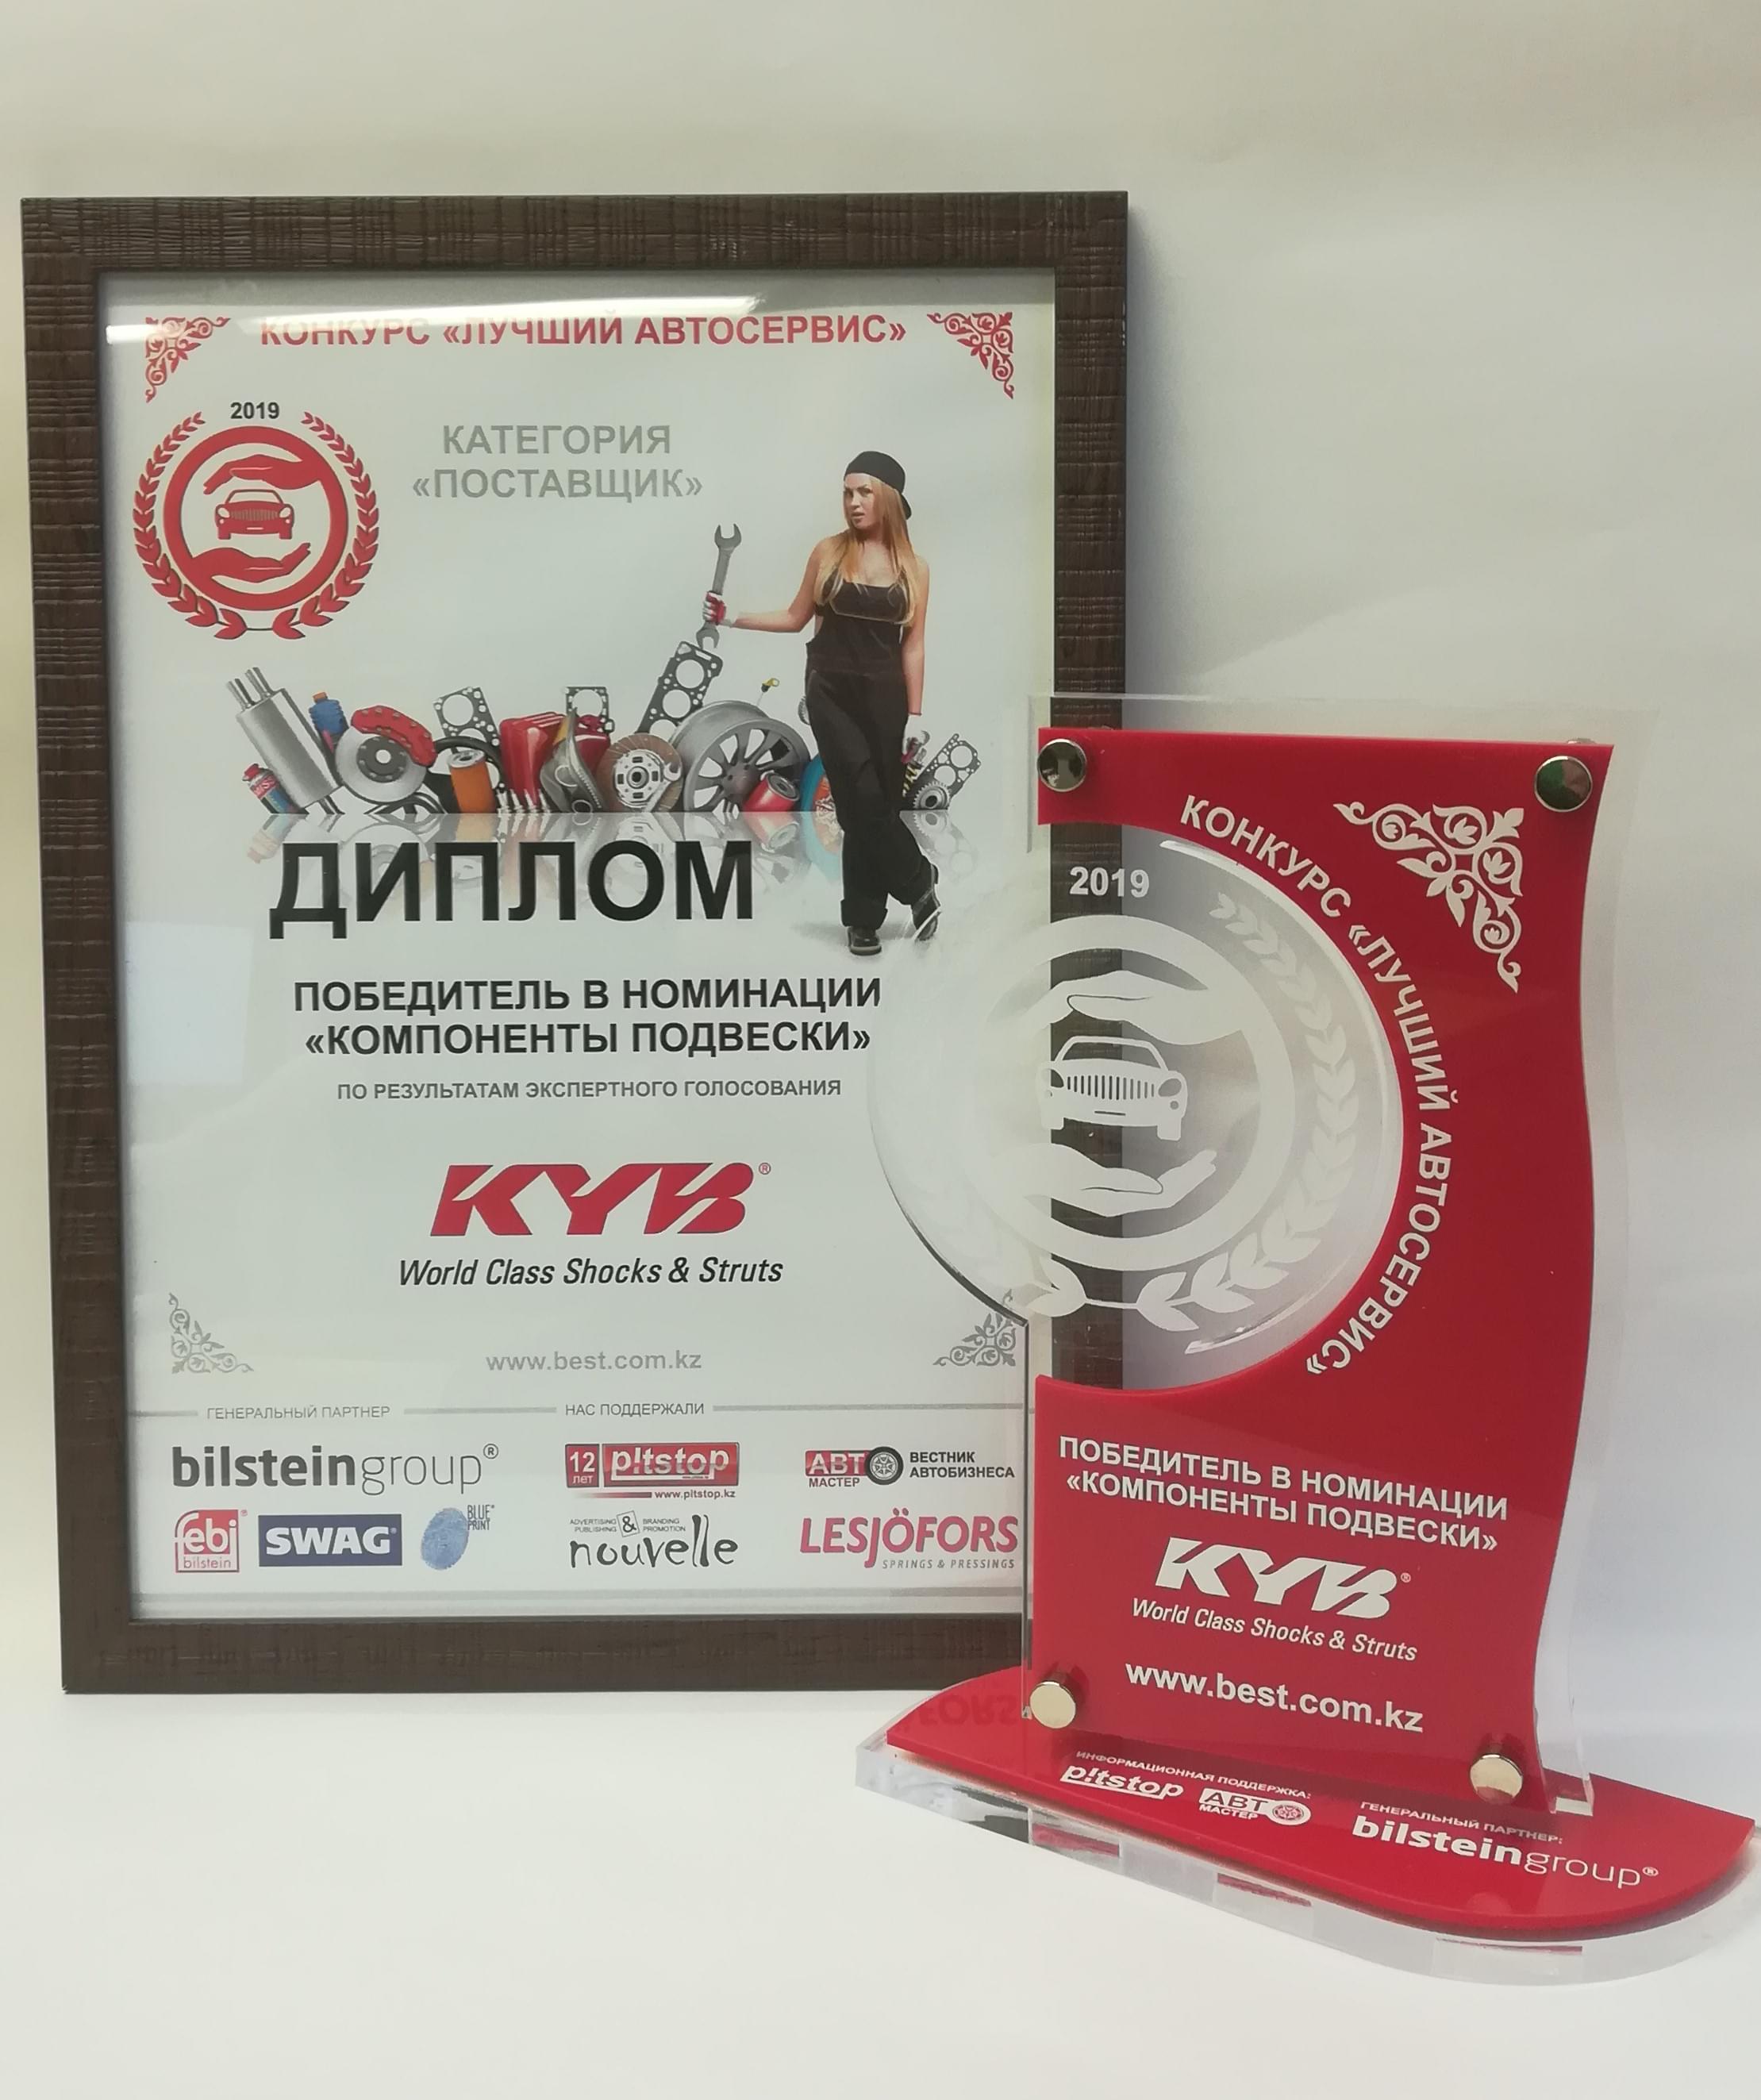 KYB - победитель в номинации "Компоненты подвески" конкурса "Лучший автосервис"